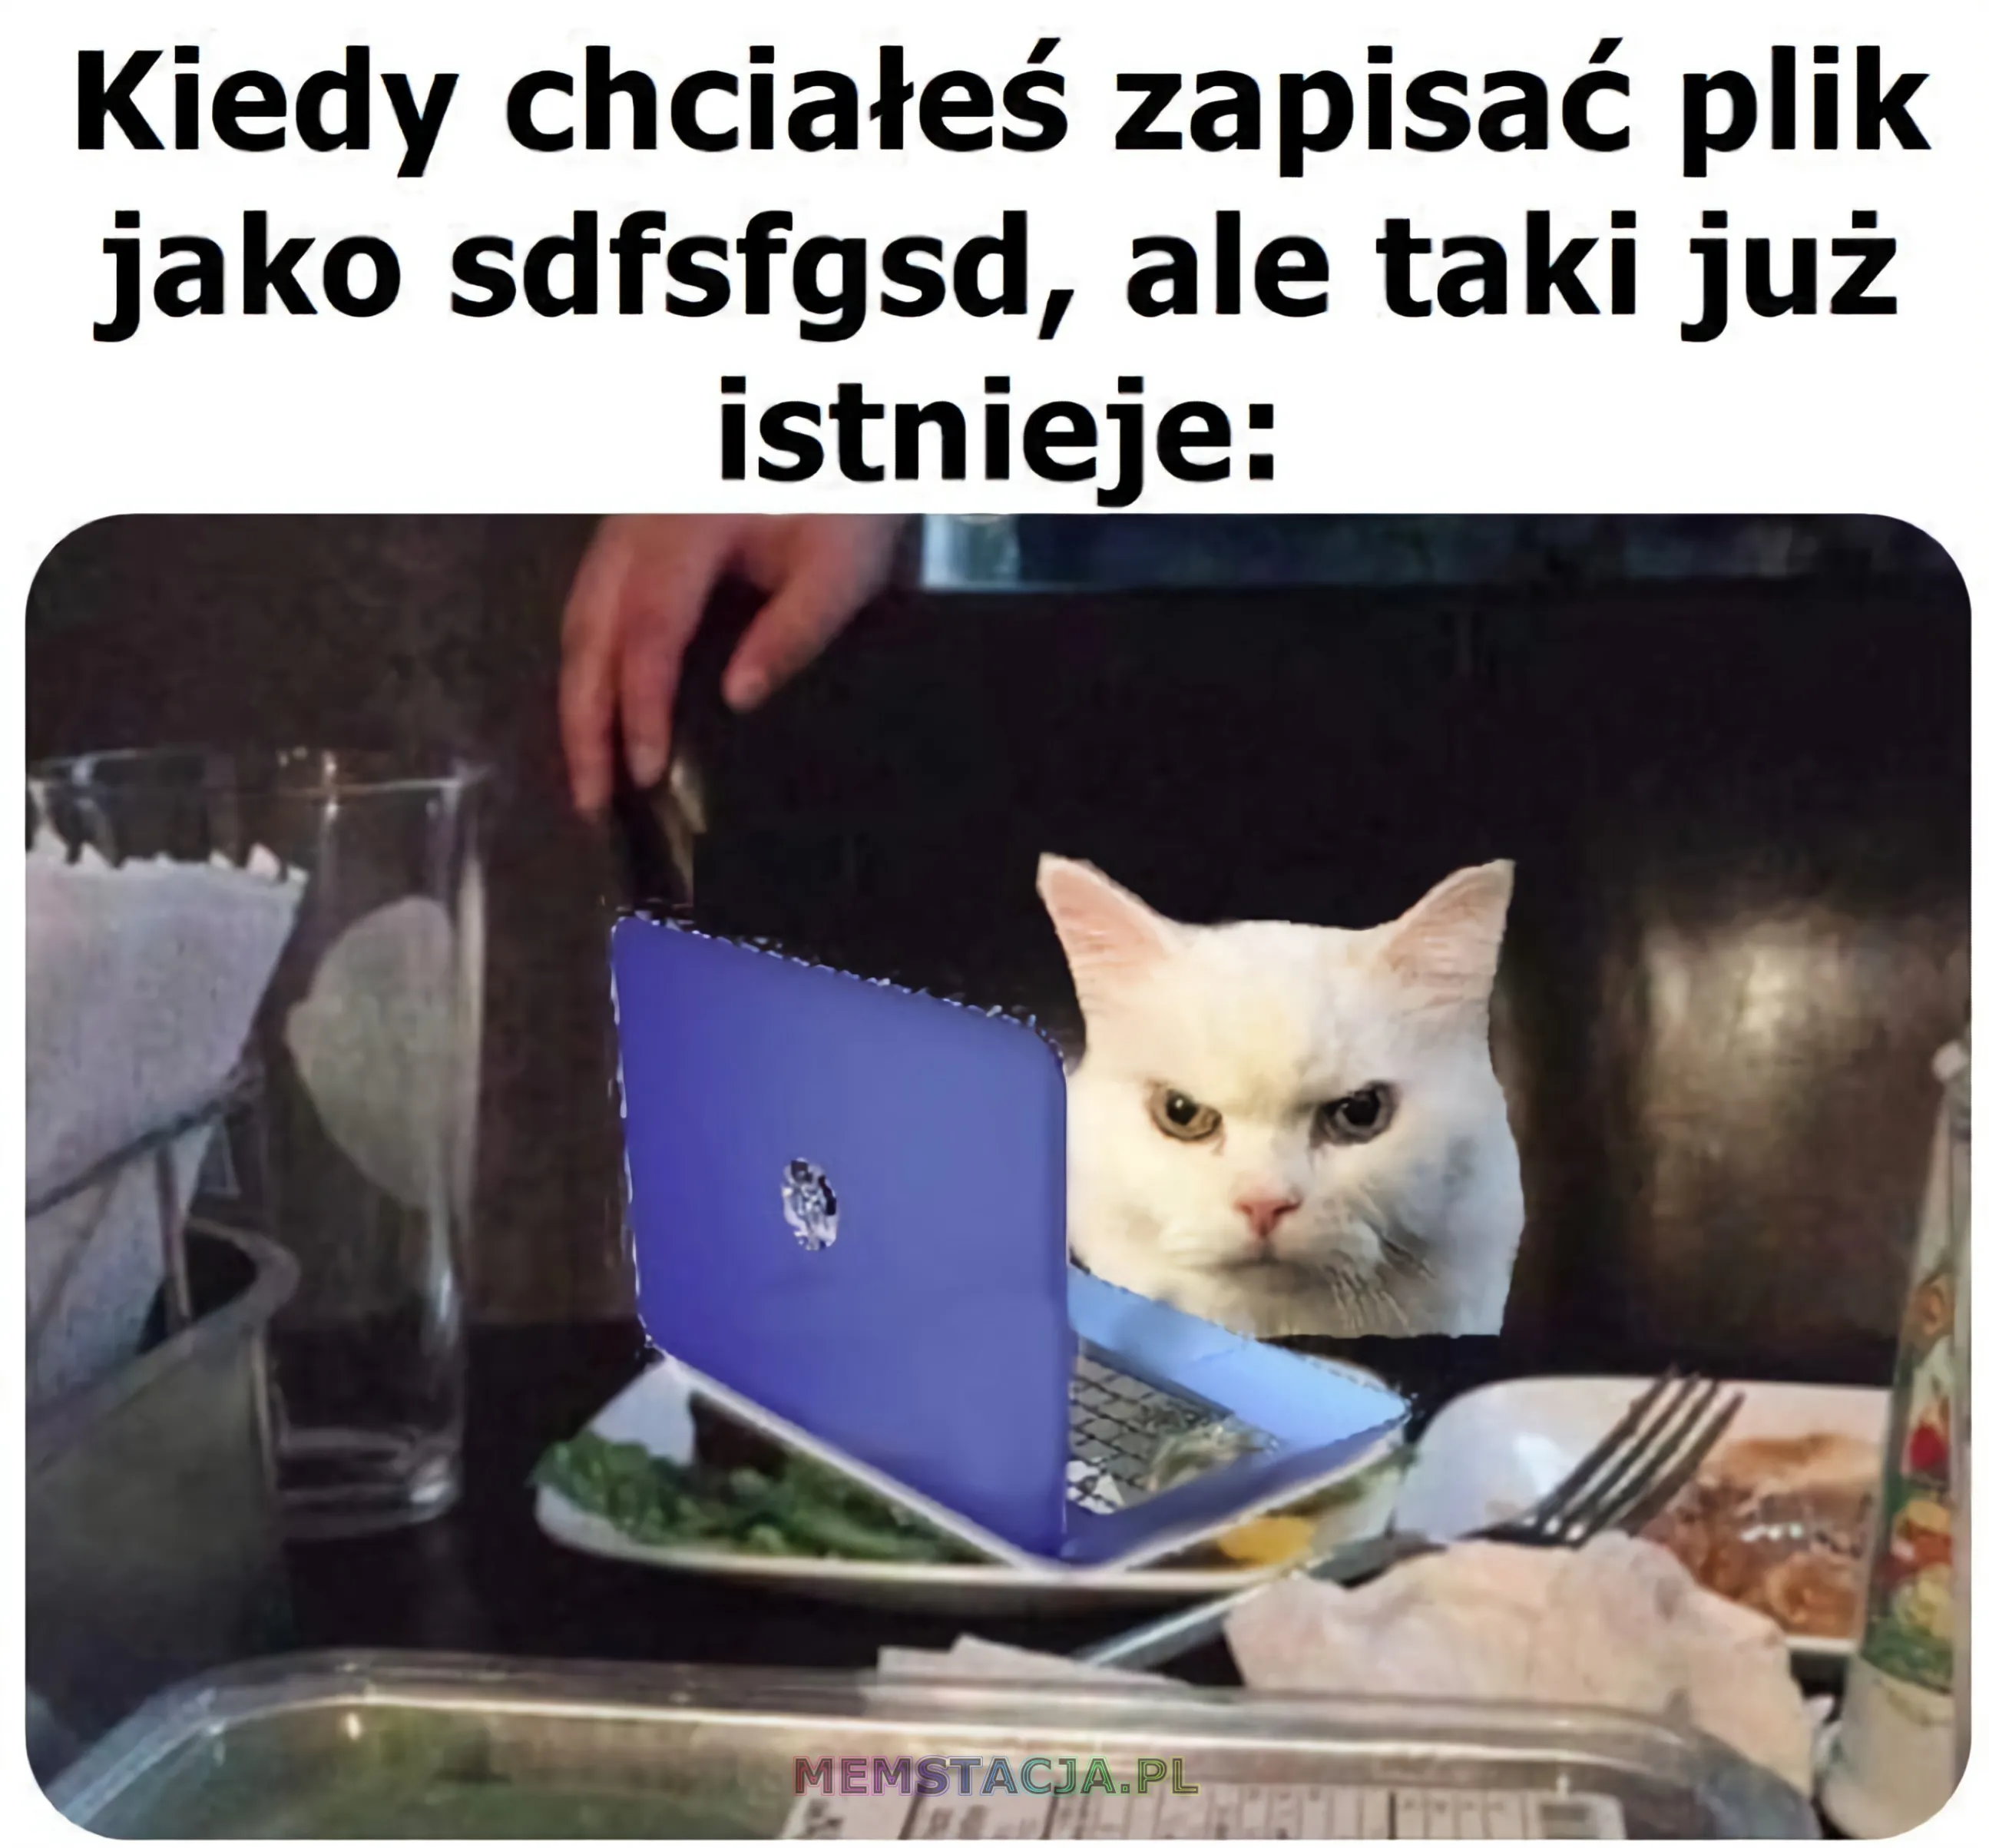 Mem przedstawiający postać kota przy laptopie: 'Kiedy chciałeś zapisać plik jako sdfsfgsd, ale taki plik już istnieje'